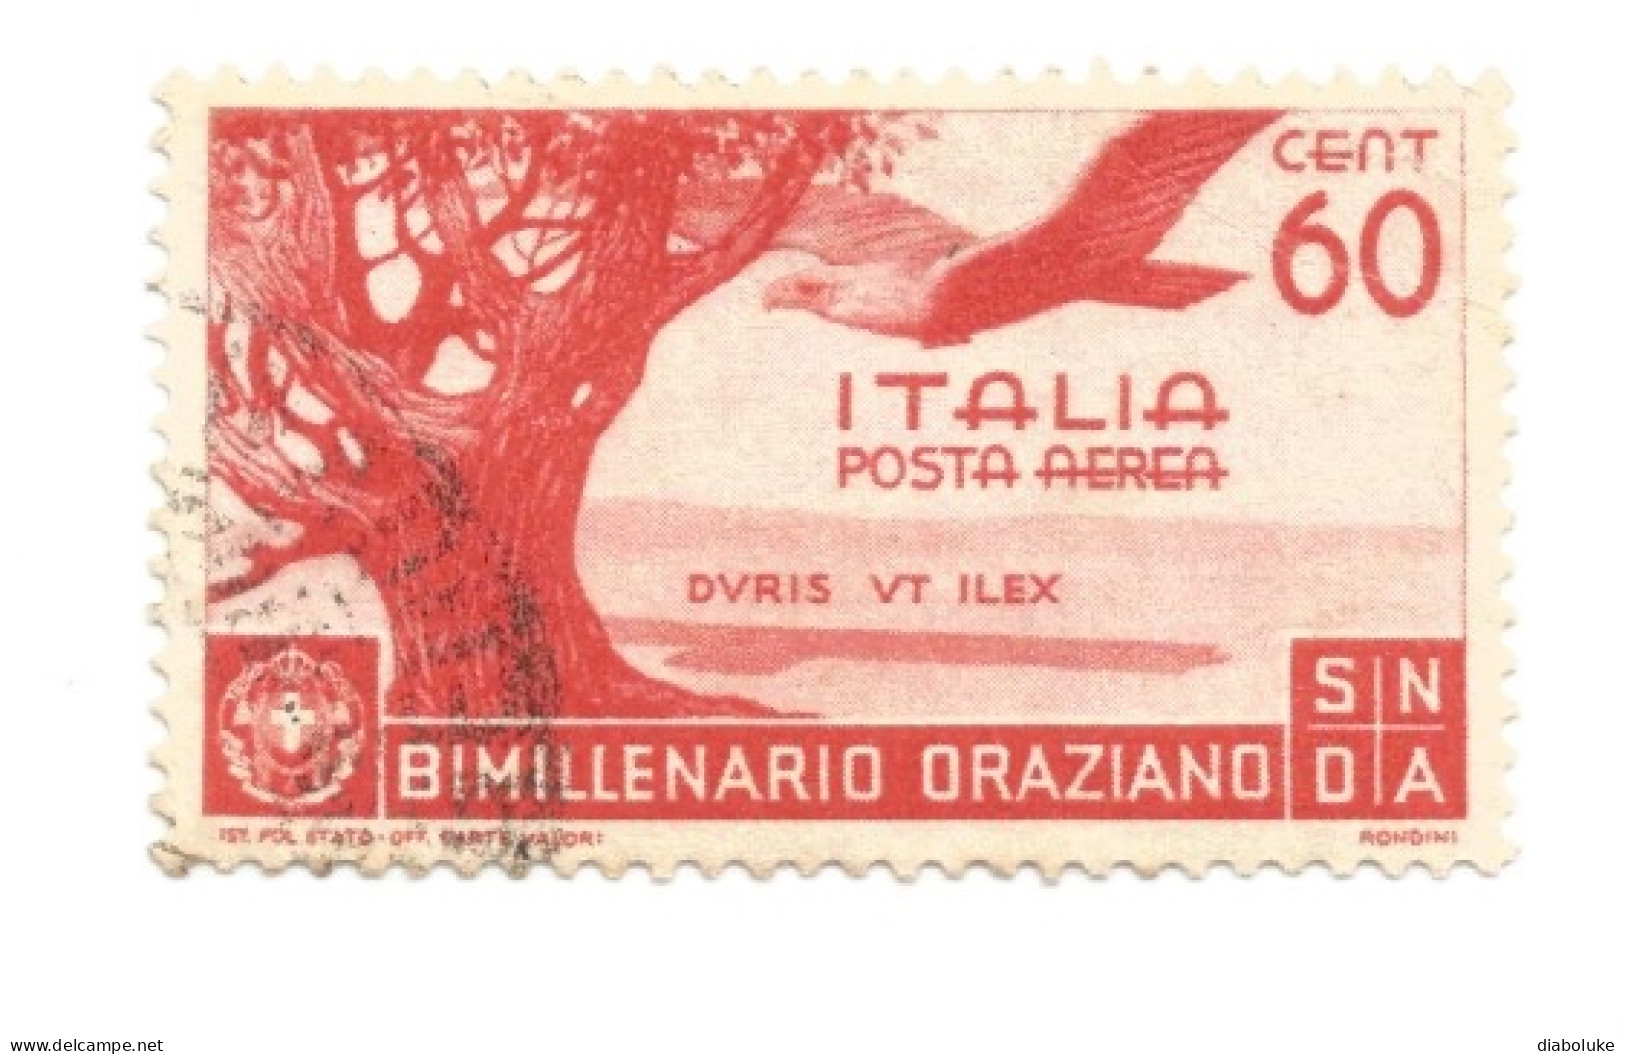 (REGNO D'ITALIA) 1936, BIMILLENARIO ORAZIANO CON POSTA AEREA - Serie di 13 francobolli usati, annulli da periziare